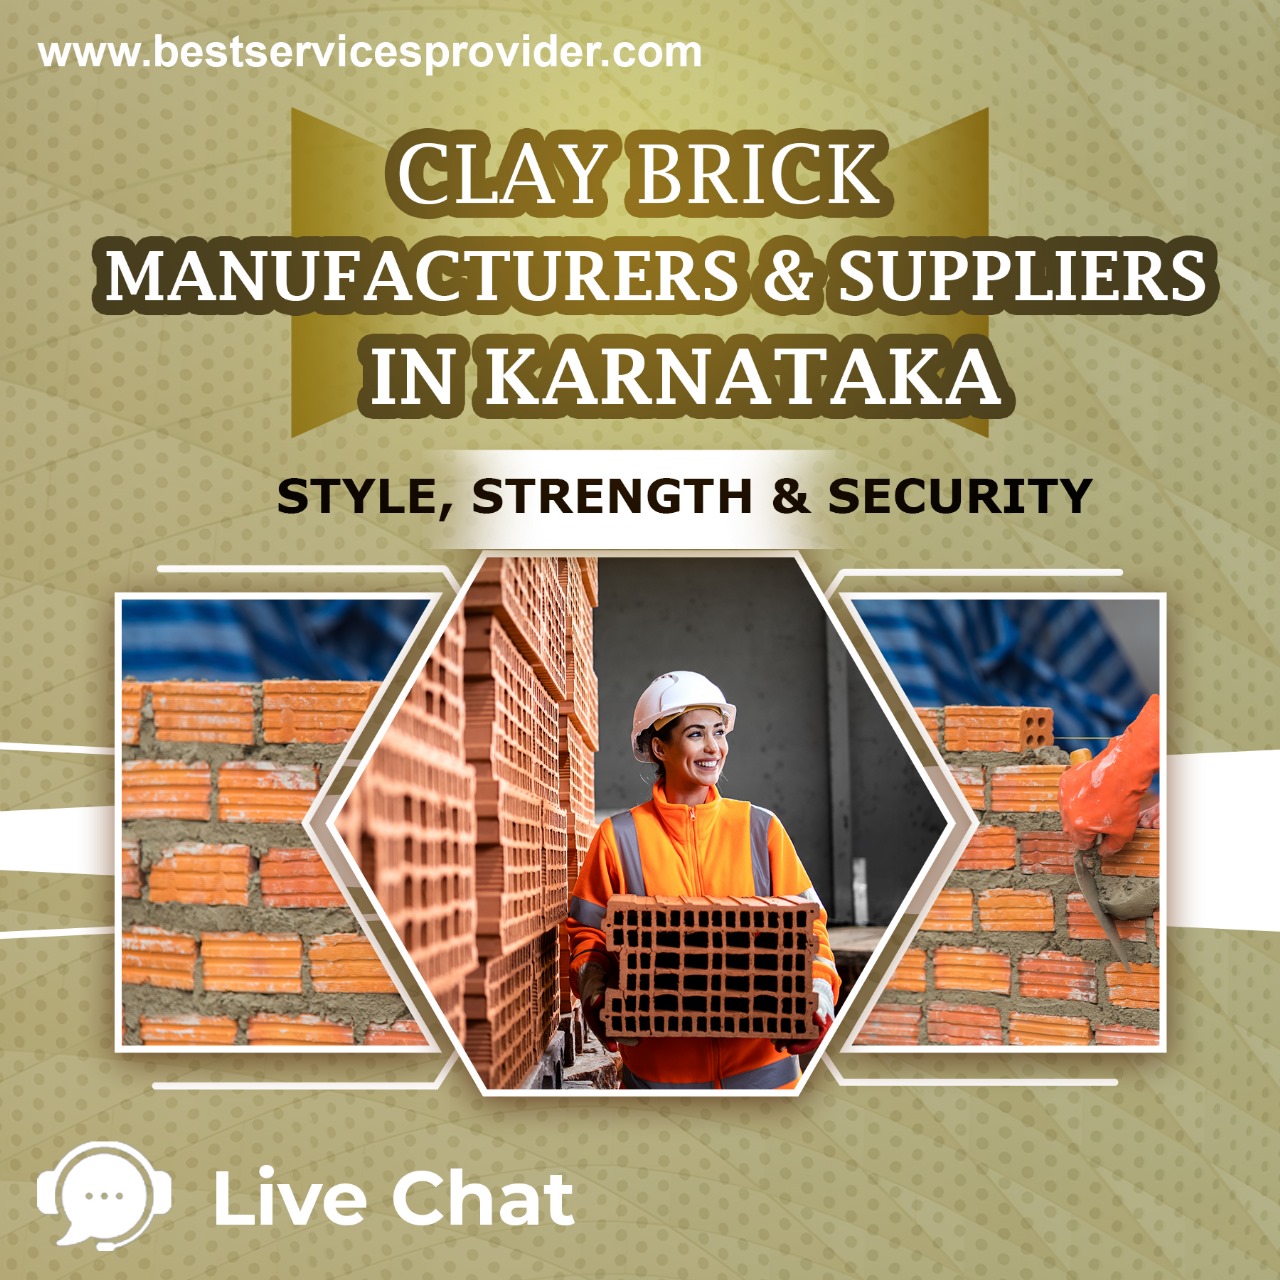 Clay Bricks Manufacturers & Suppliers In Karnataka